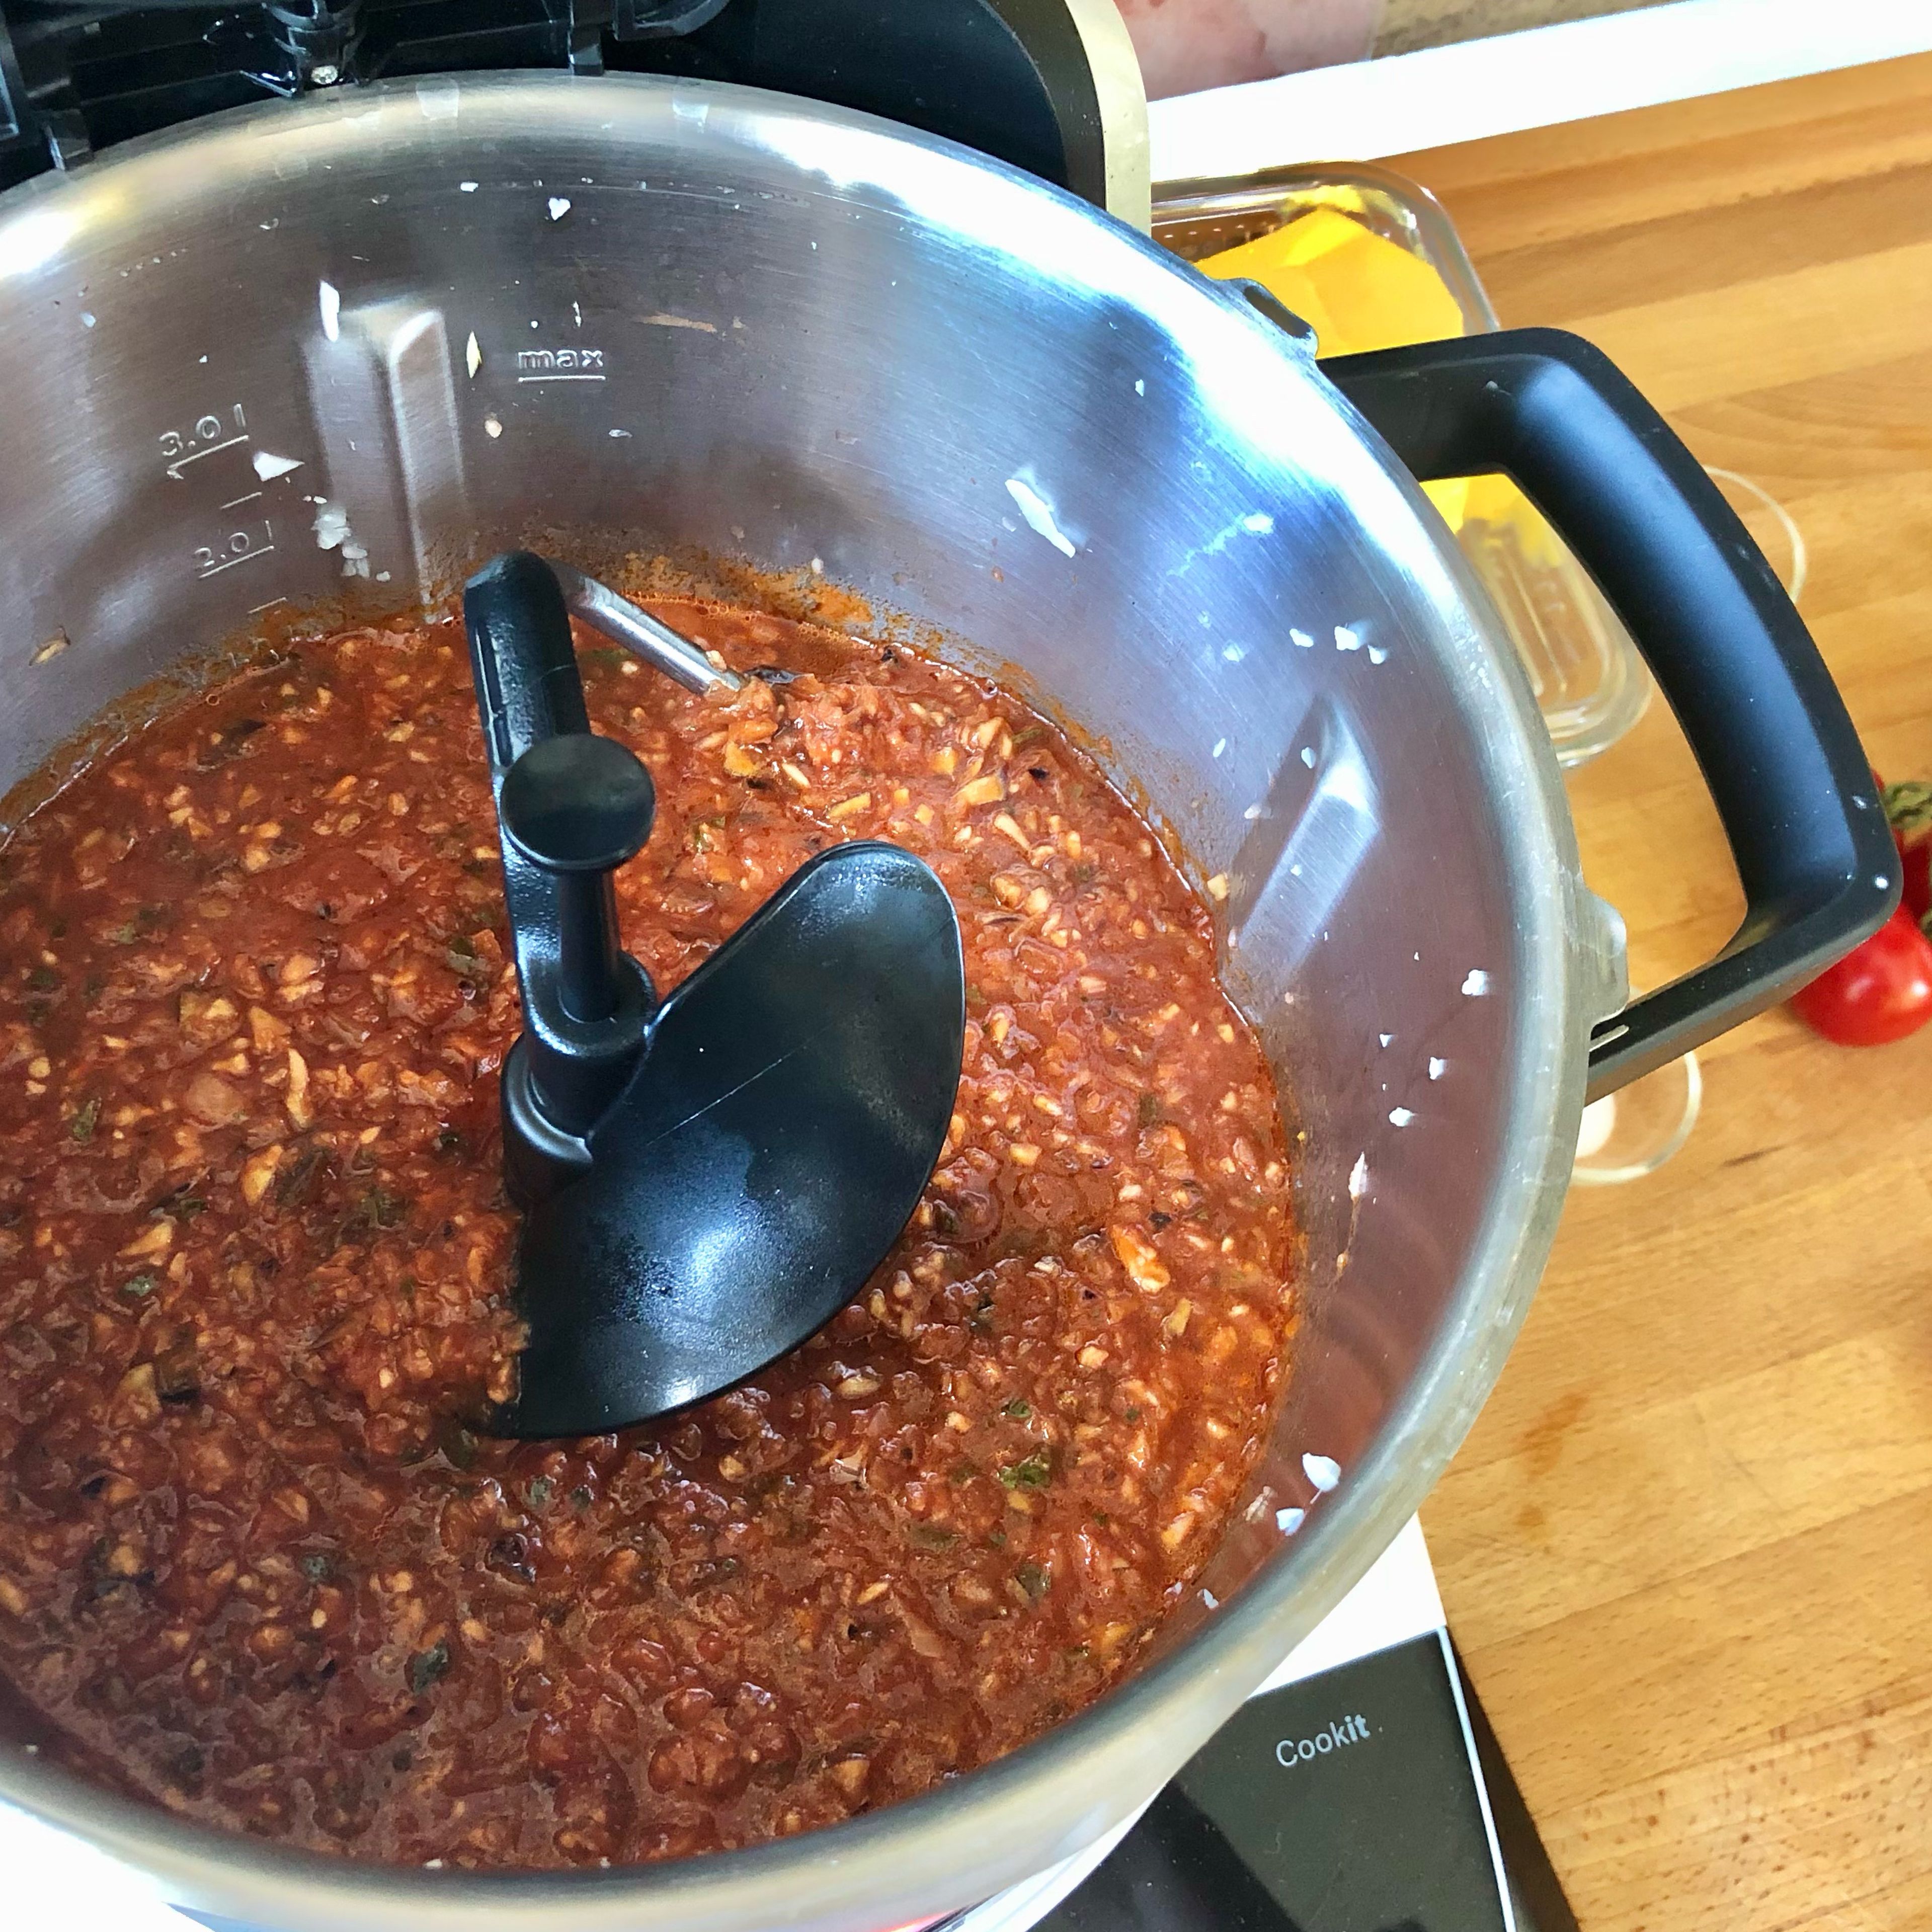 Das Universalmesser durch den 3D-Rührer ersetzen. 600 ml Tomaten-Gemüsesaft einwiegen und köcheln (3D-Rührer l Stufe 4 | 97 Grad | 10 Minuten). (Wer möchte kann das Gericht bis hierhin vorkochen, um kurz vor dem Servieren mehr Zeit mit anderen Dingen zu verbringen. Dann einfach den Sugo wieder erwärmen, um mit dem Folgeschritt fortzufahren.)